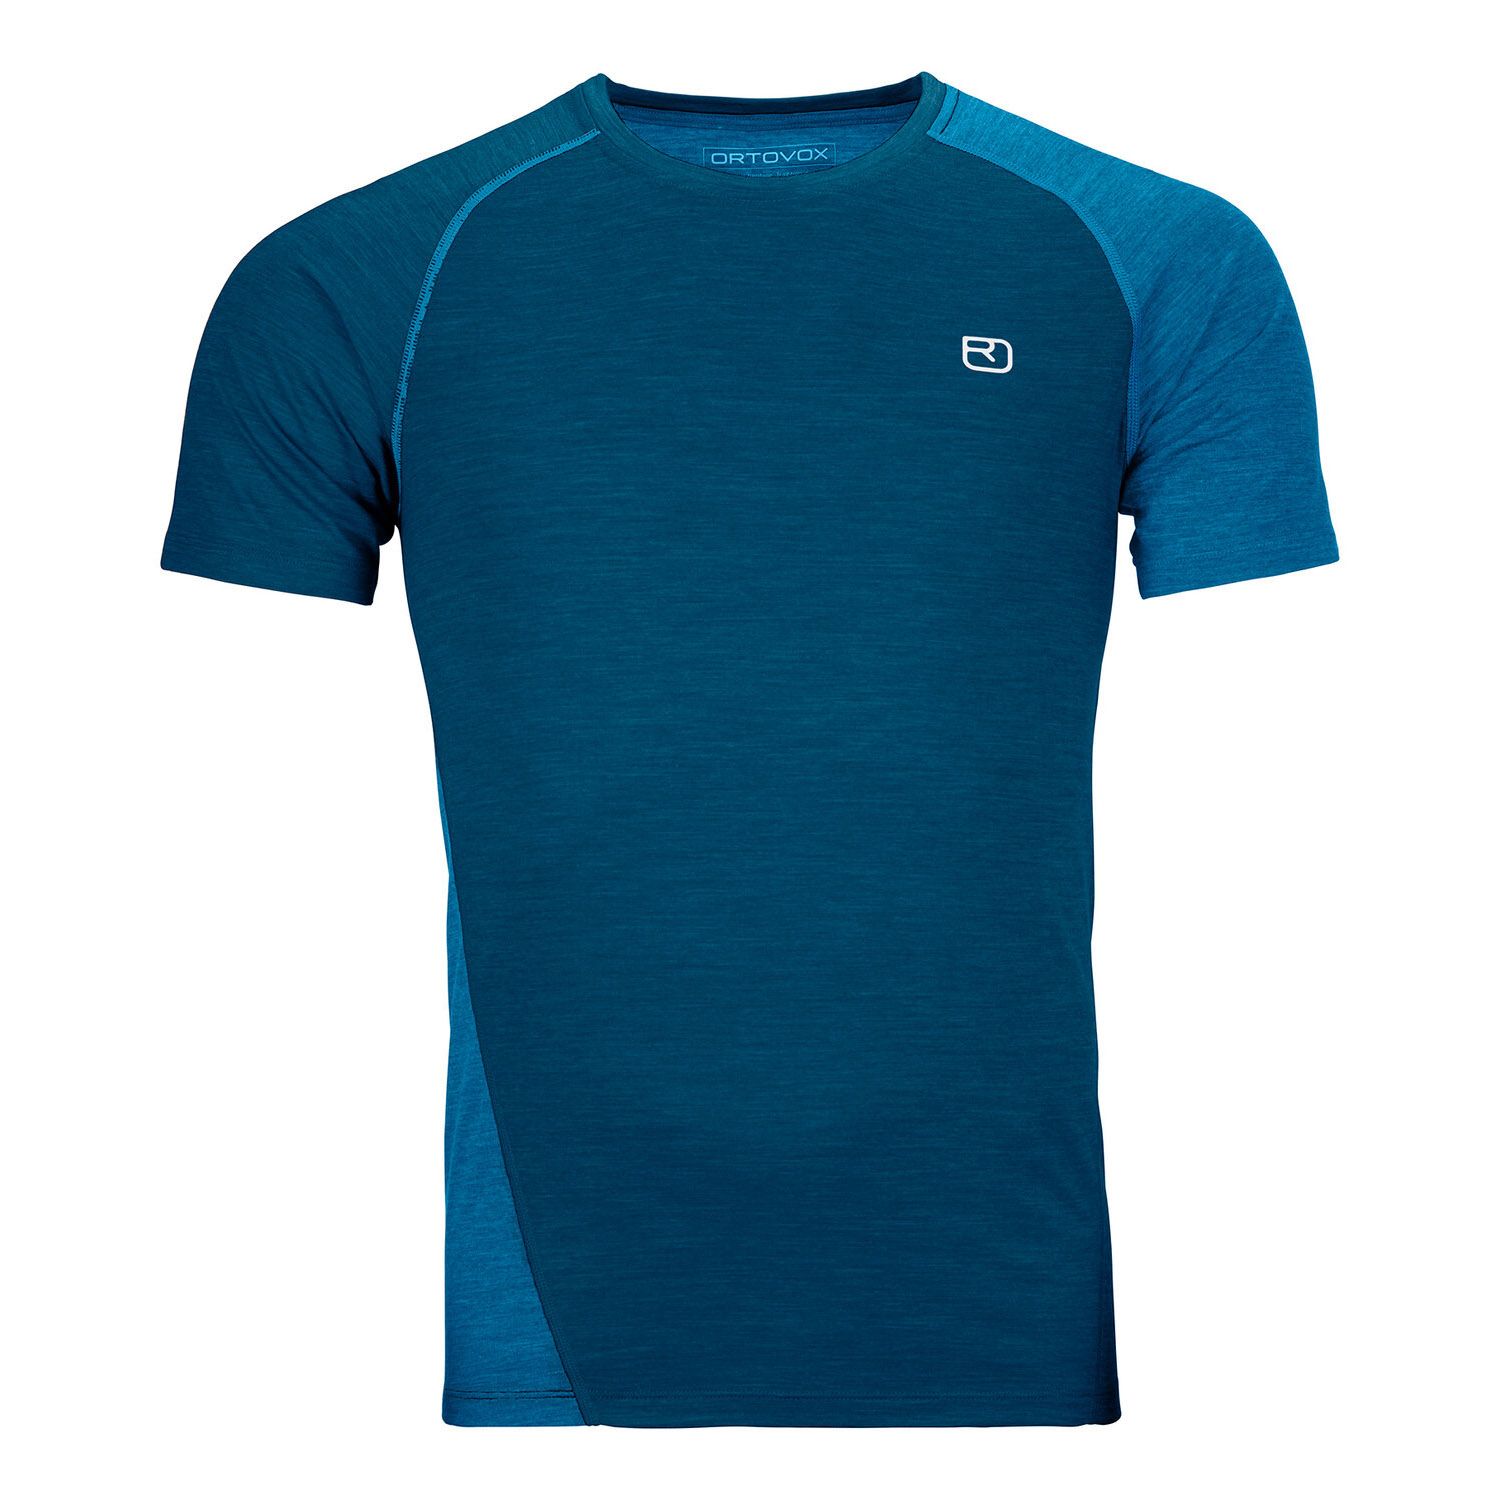 Ortovox 120 Cool Tec Fast Upward TS M T-Shirt blau